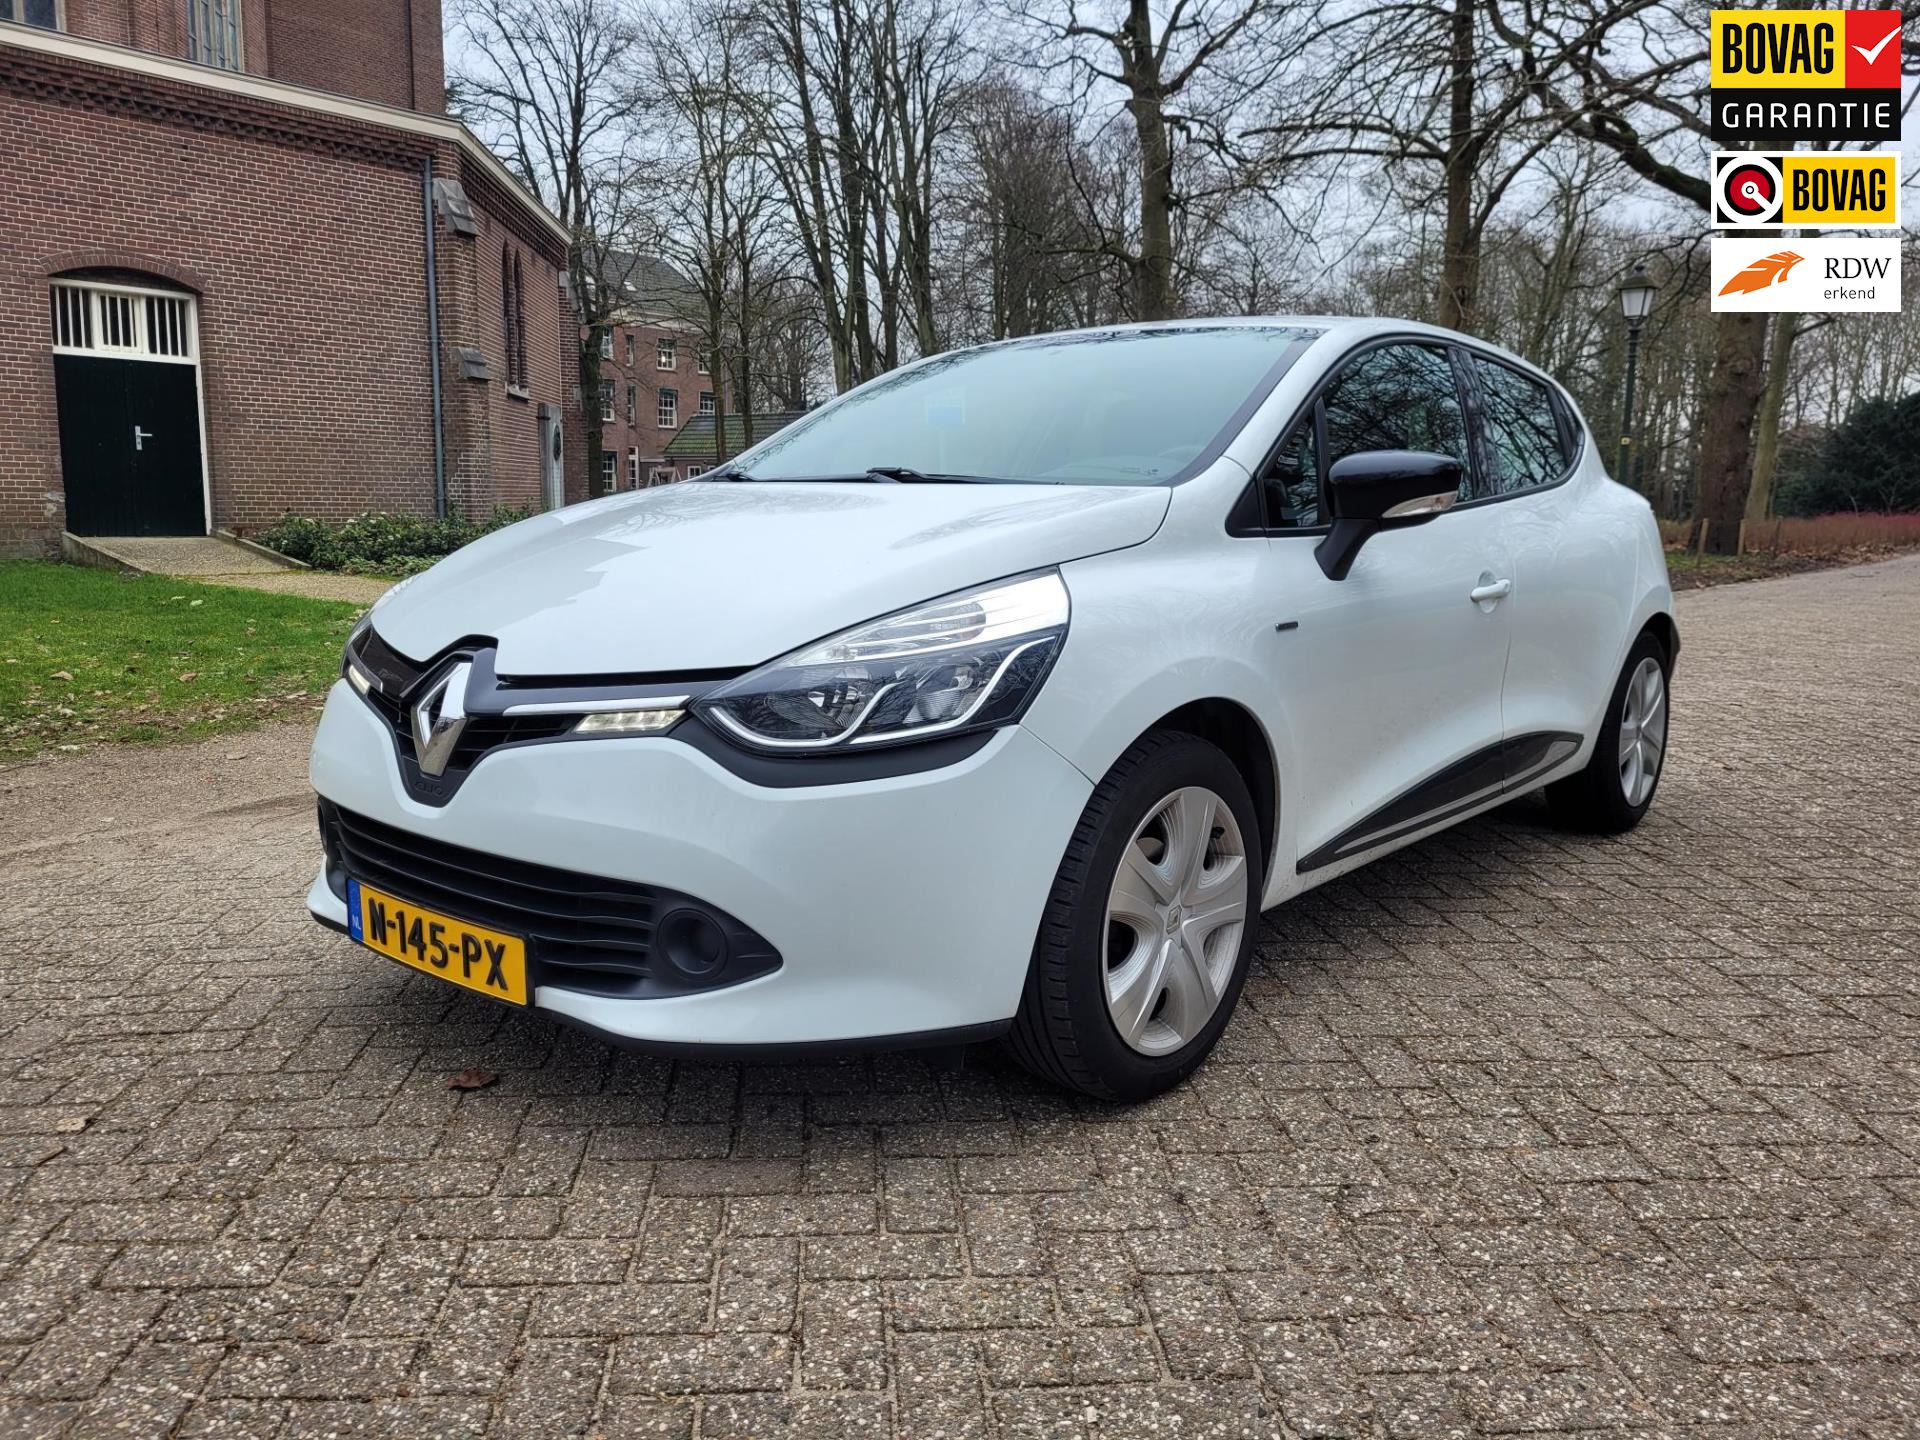 Dodelijk omroeper Gehoorzaam Renault Clio - 1.2 16V Benzine uit 2016 - www.garagevinkwarmond.nl